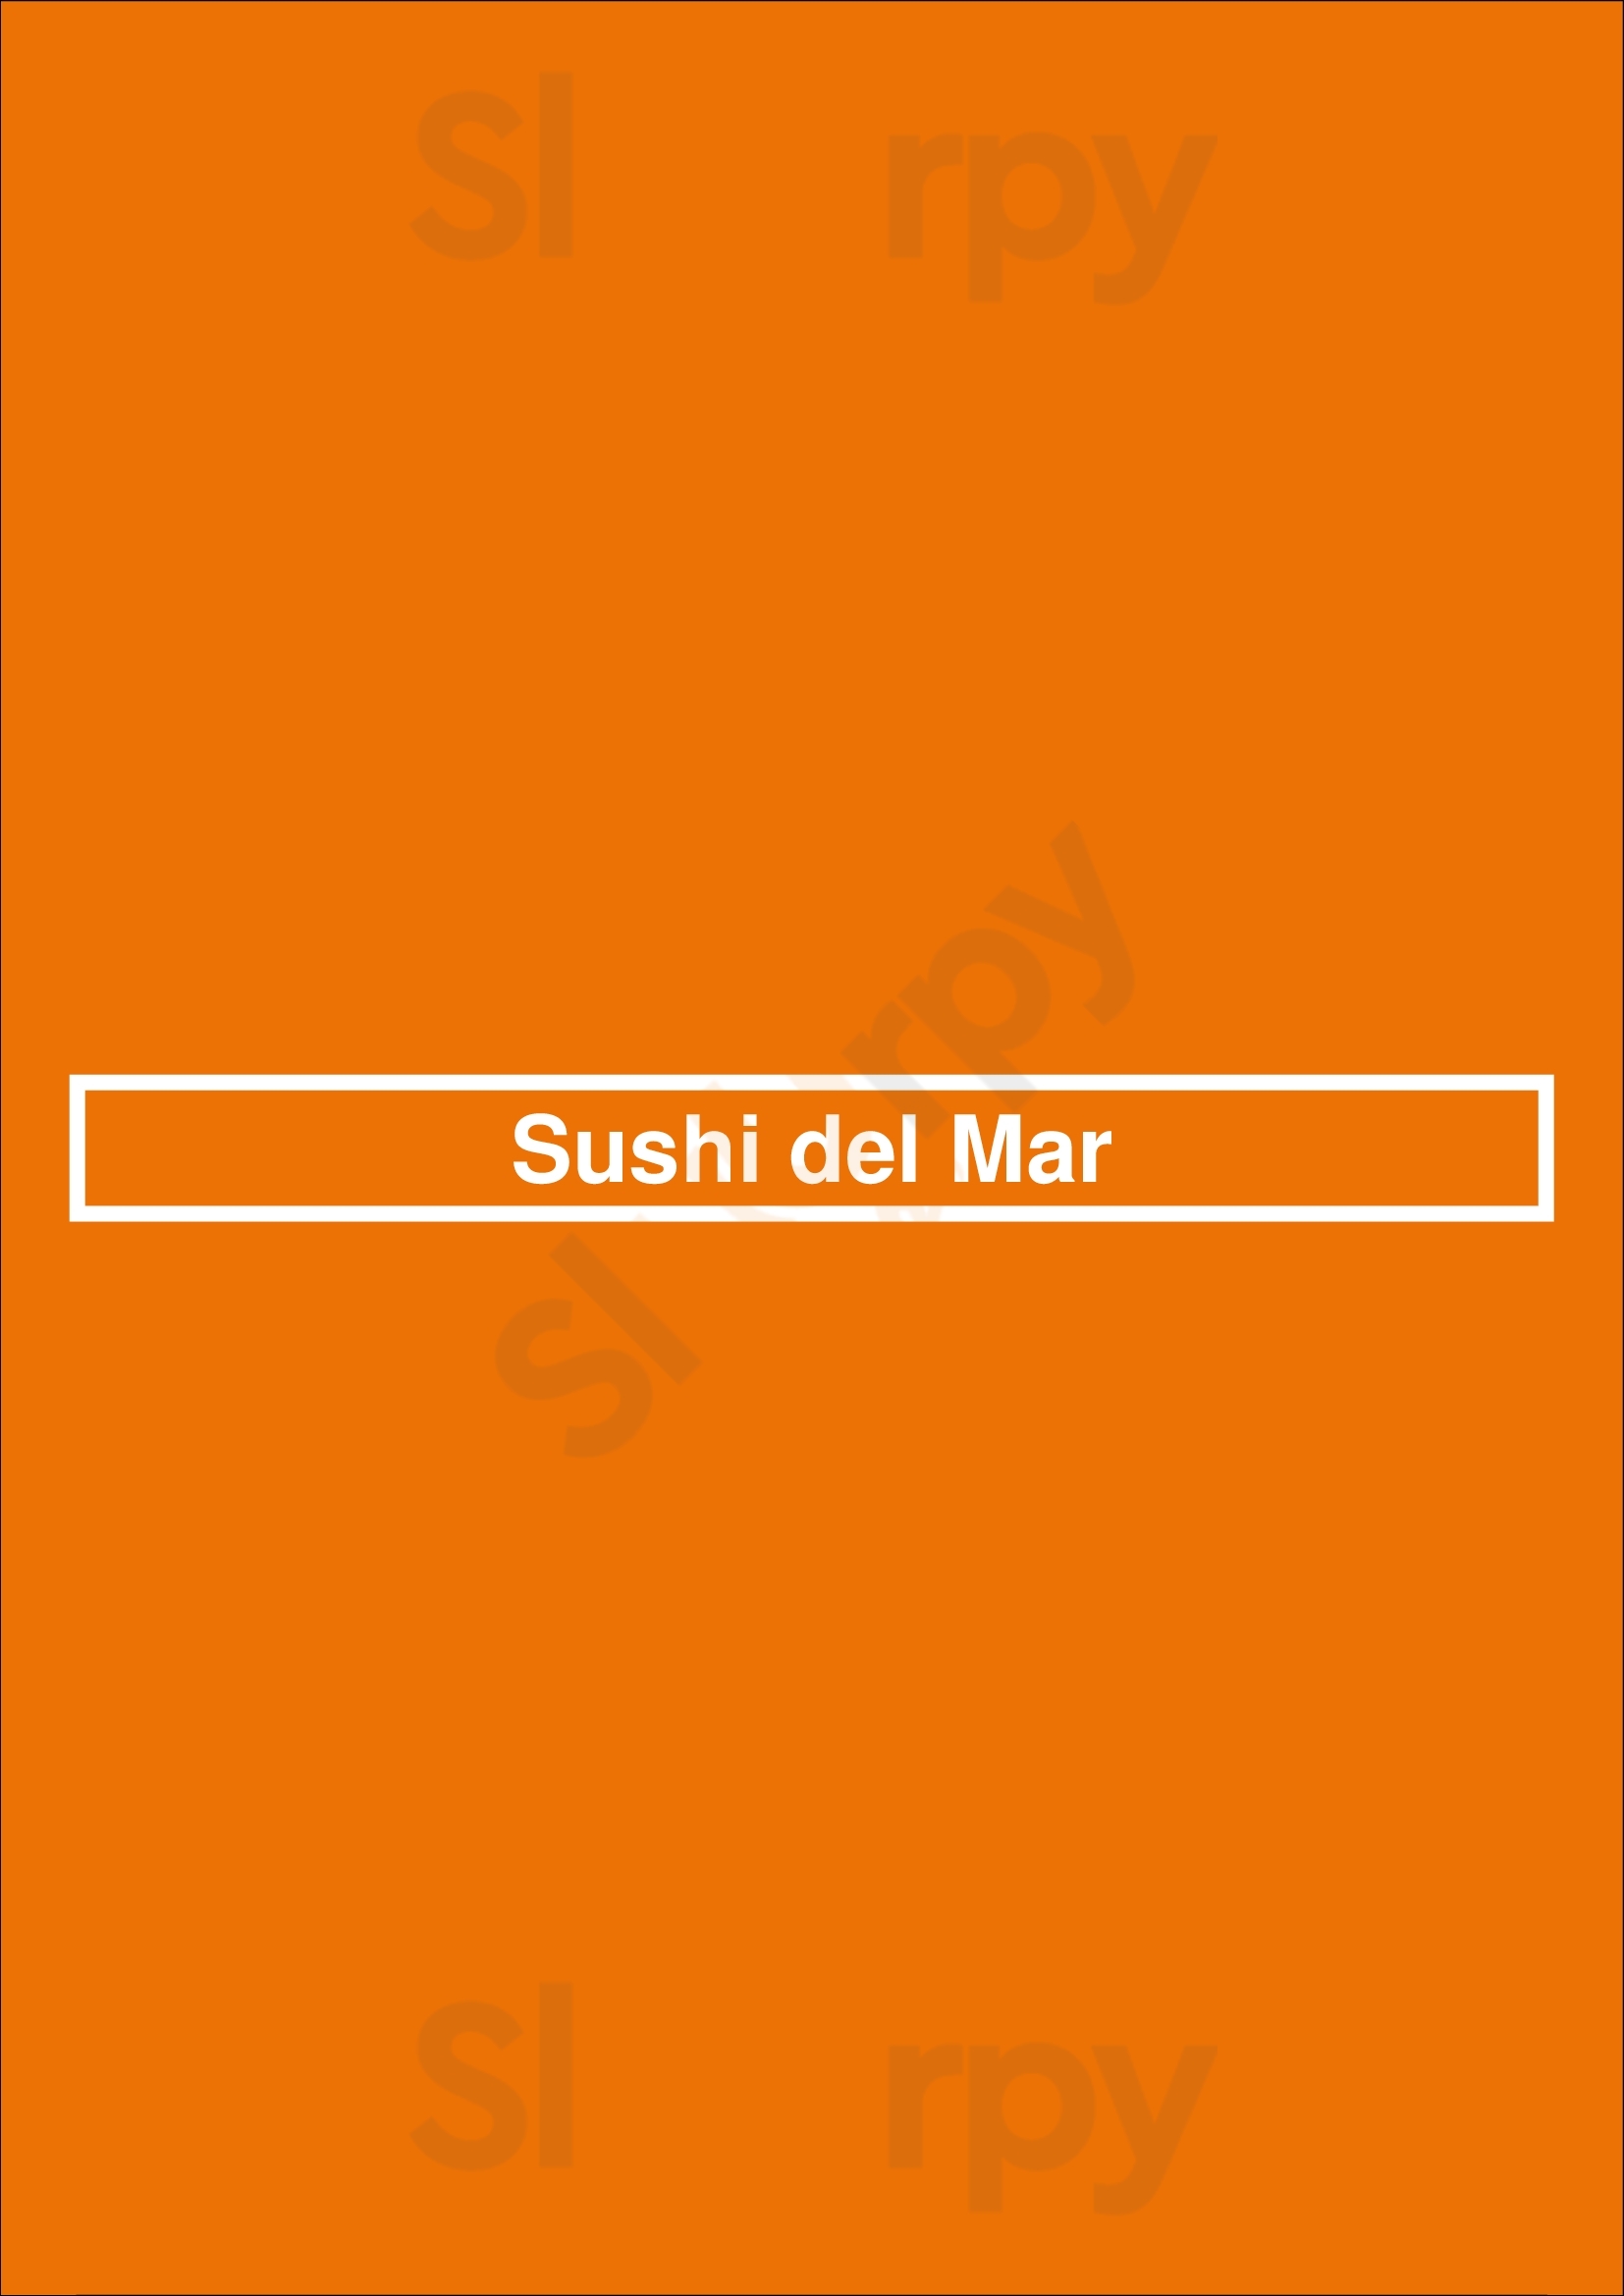 Sushi Del Mar Cascais Menu - 1